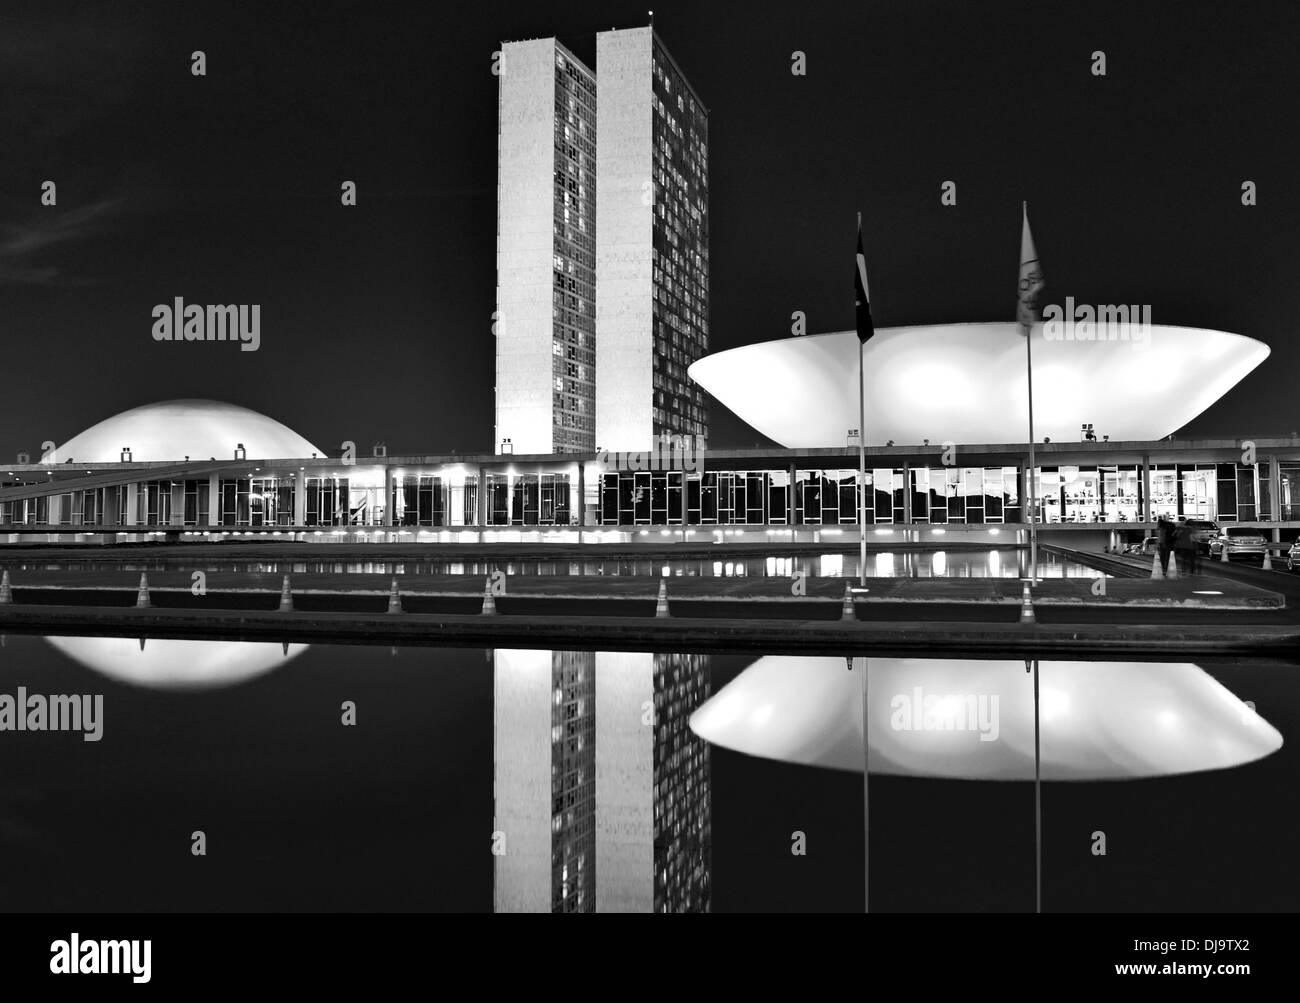 Brésil, Brasilia : Vue nocturne du Congrès national par Oscar Niemeyer Banque D'Images